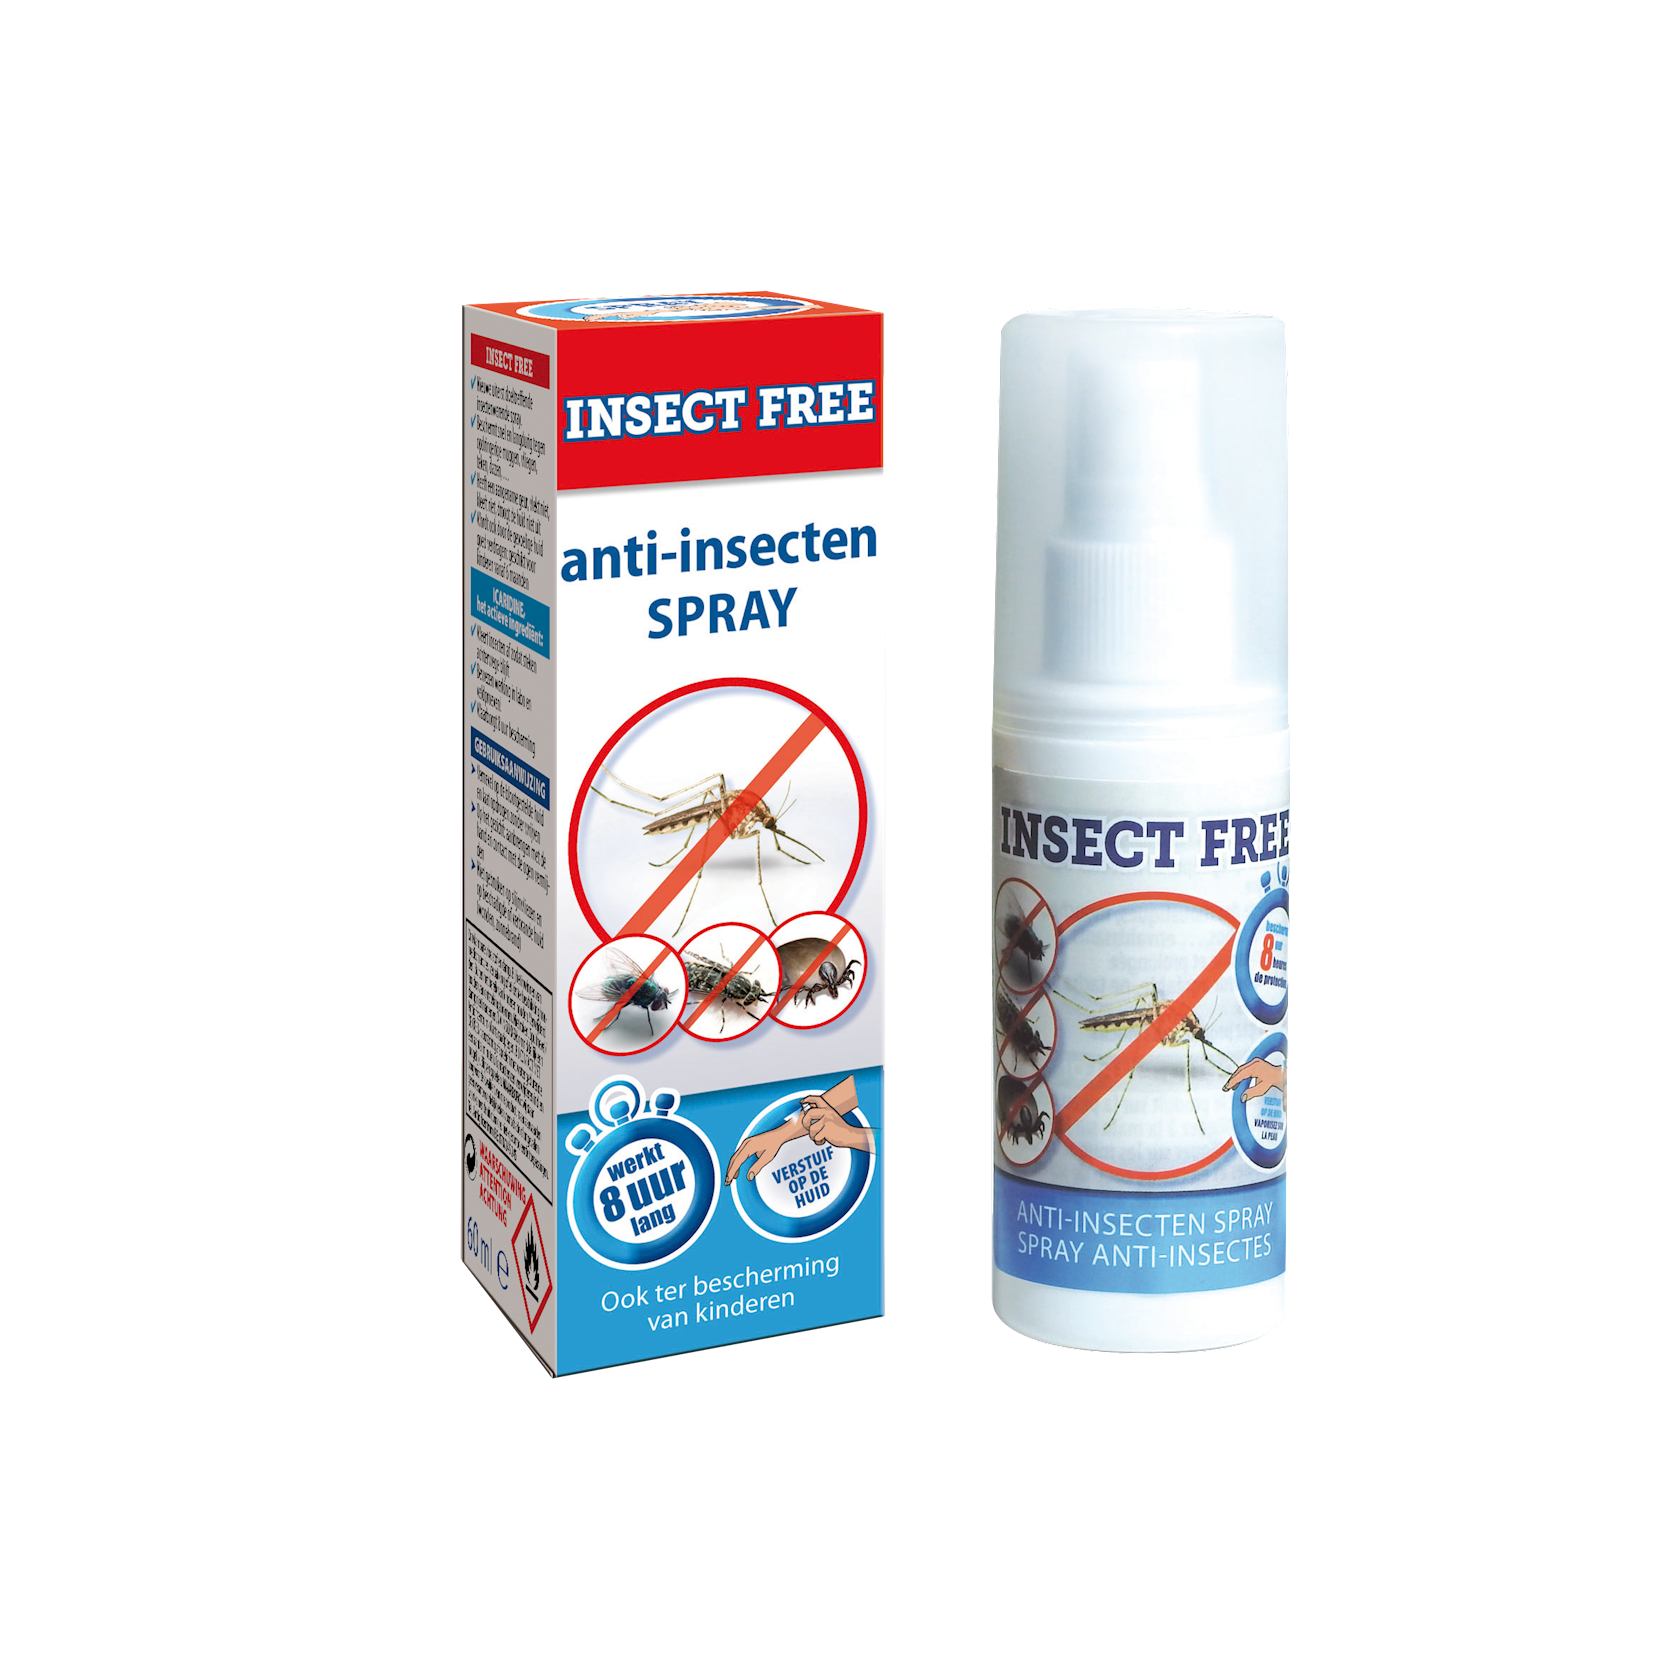 Insect-free-60-ml-spray-uiterst-doeltreffende-insectenwerende-spray-met-snelle-en-langdurige-werking